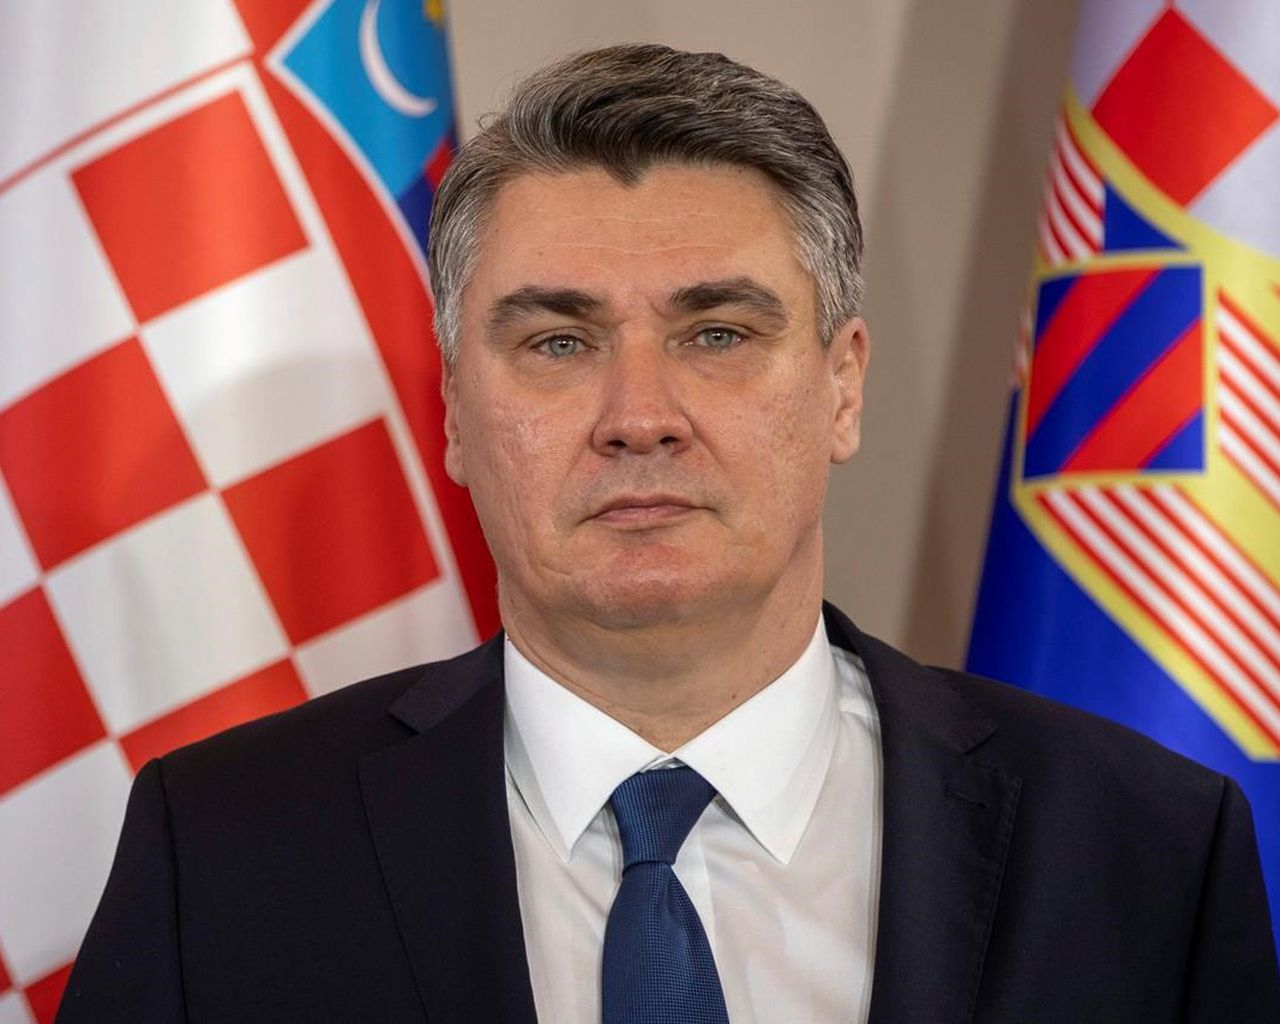 зоран миланович президент хорватии